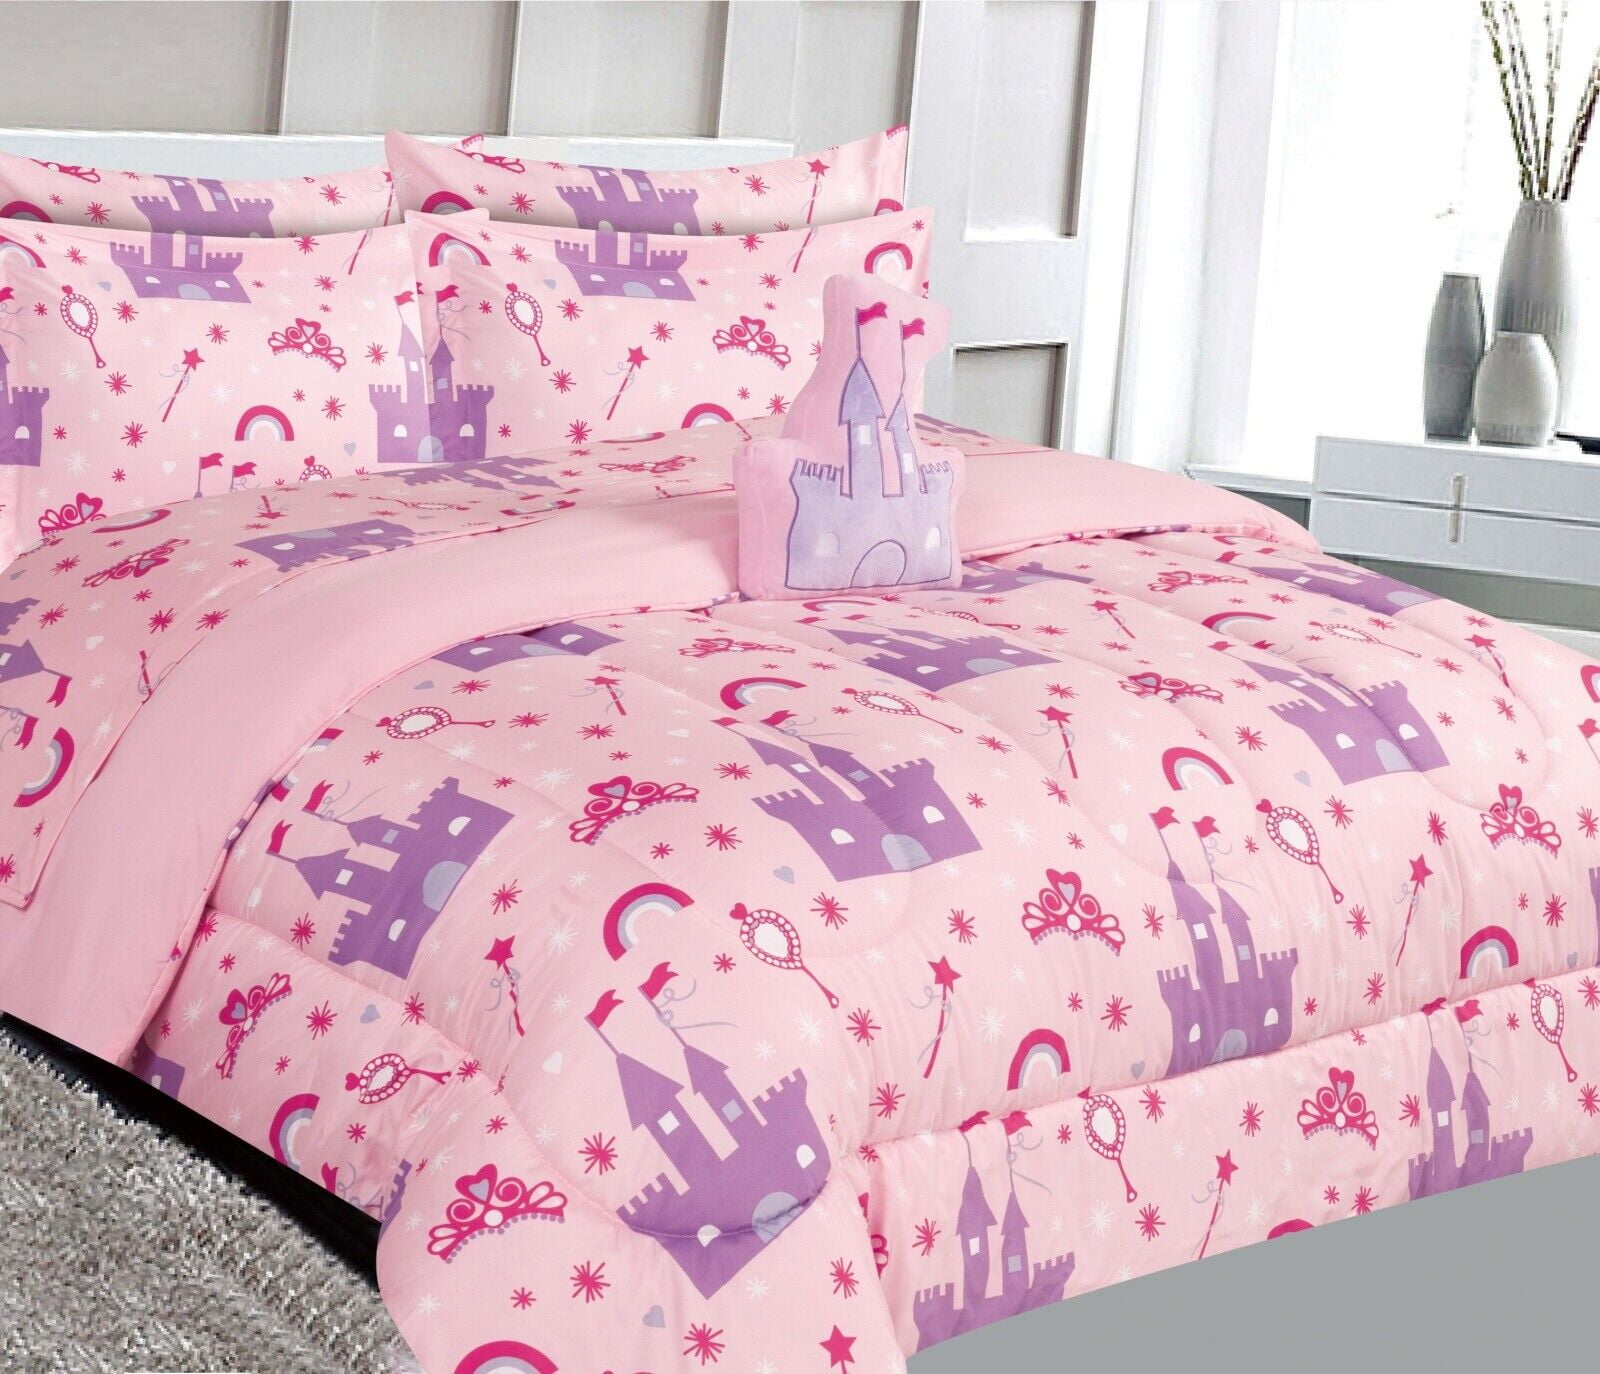 Fancy Linen 5pc Twin Comforter Set Princess Castle Palace Pink Lavender White New 